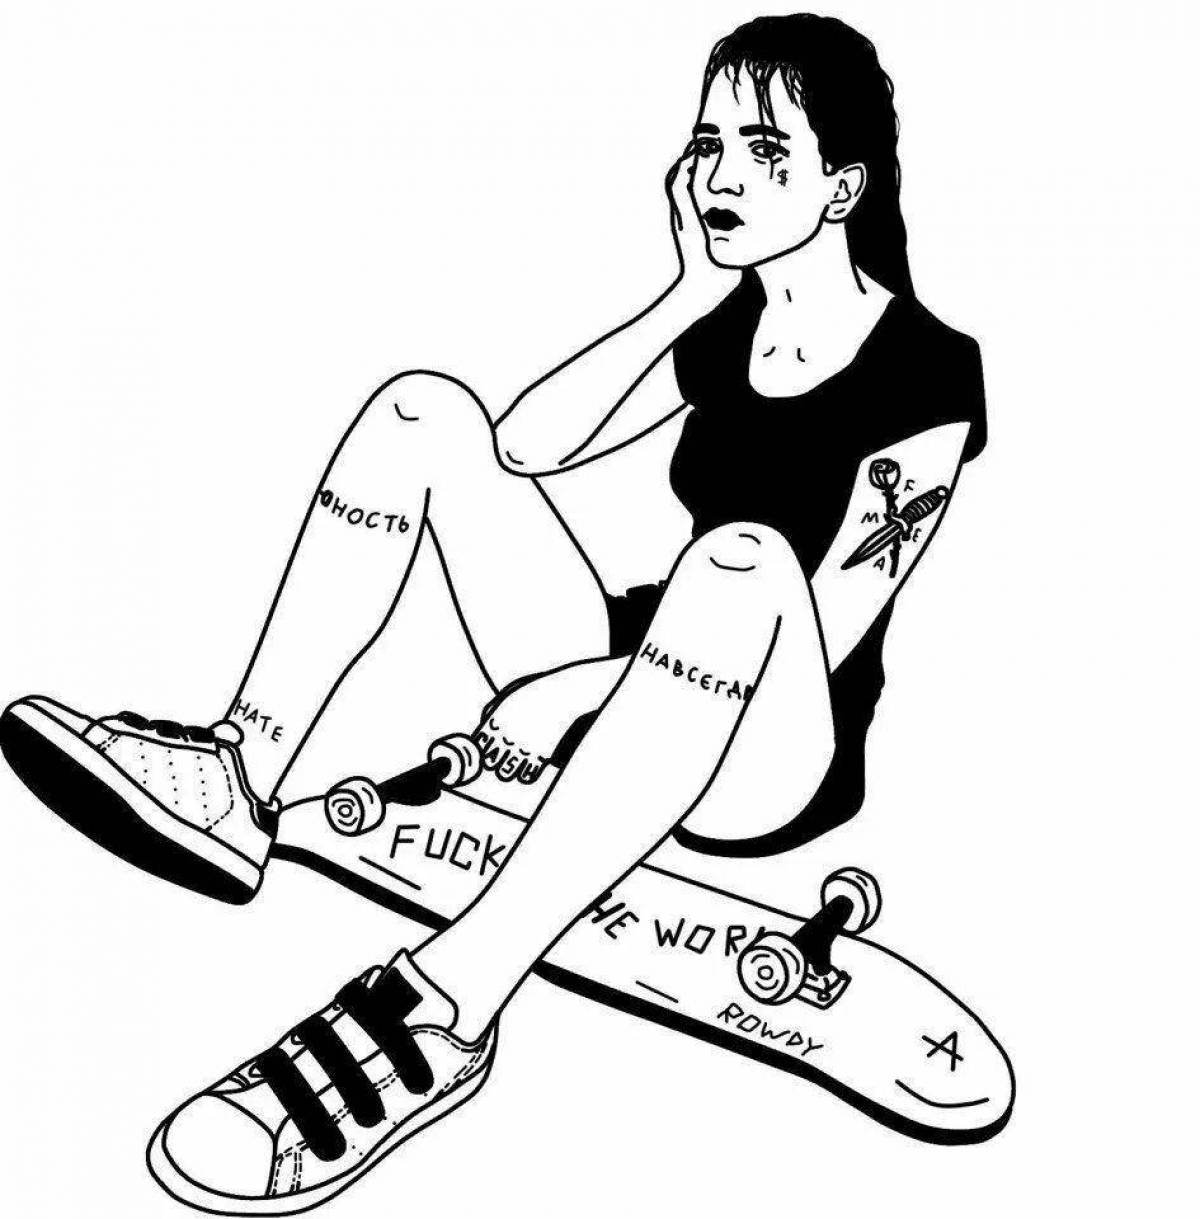 A cheeky girl on a skateboard